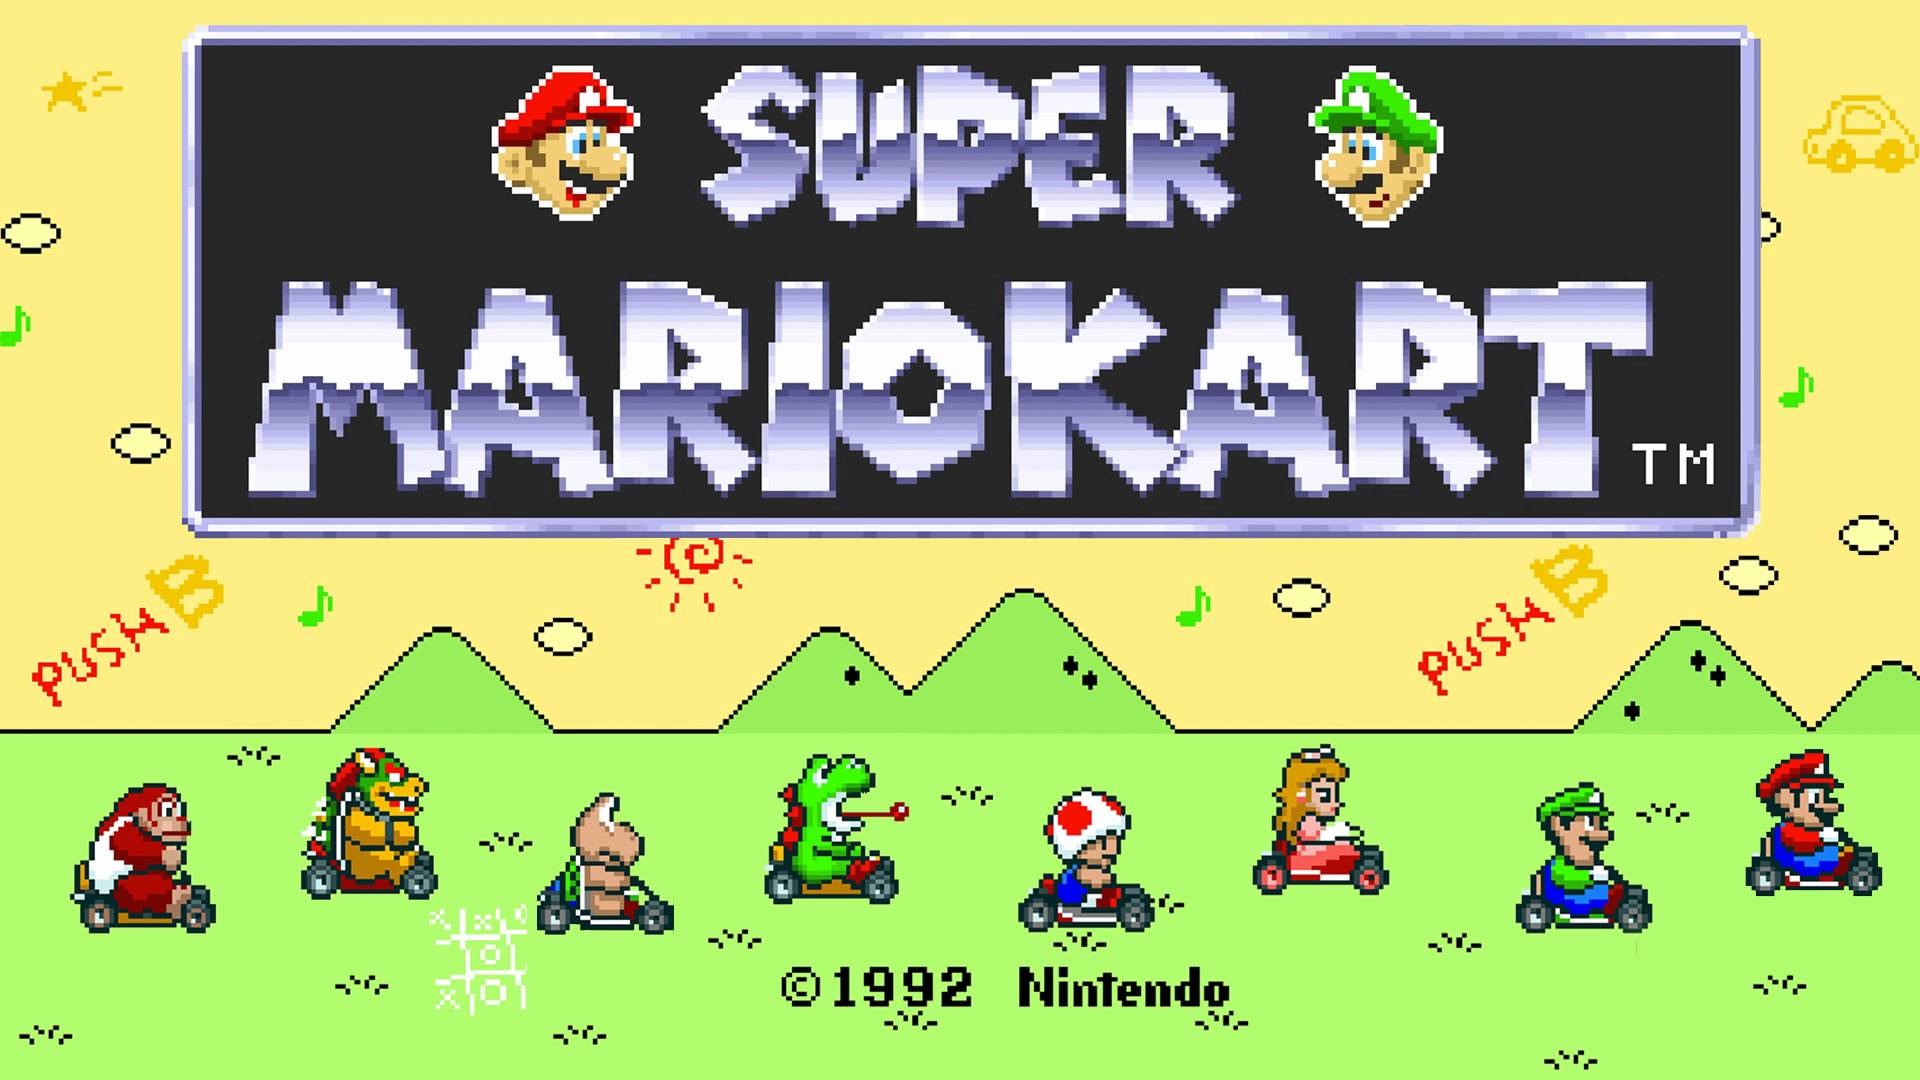 Super Mario Kart Backgrounds, Compatible - PC, Mobile, Gadgets| 1920x1080 px